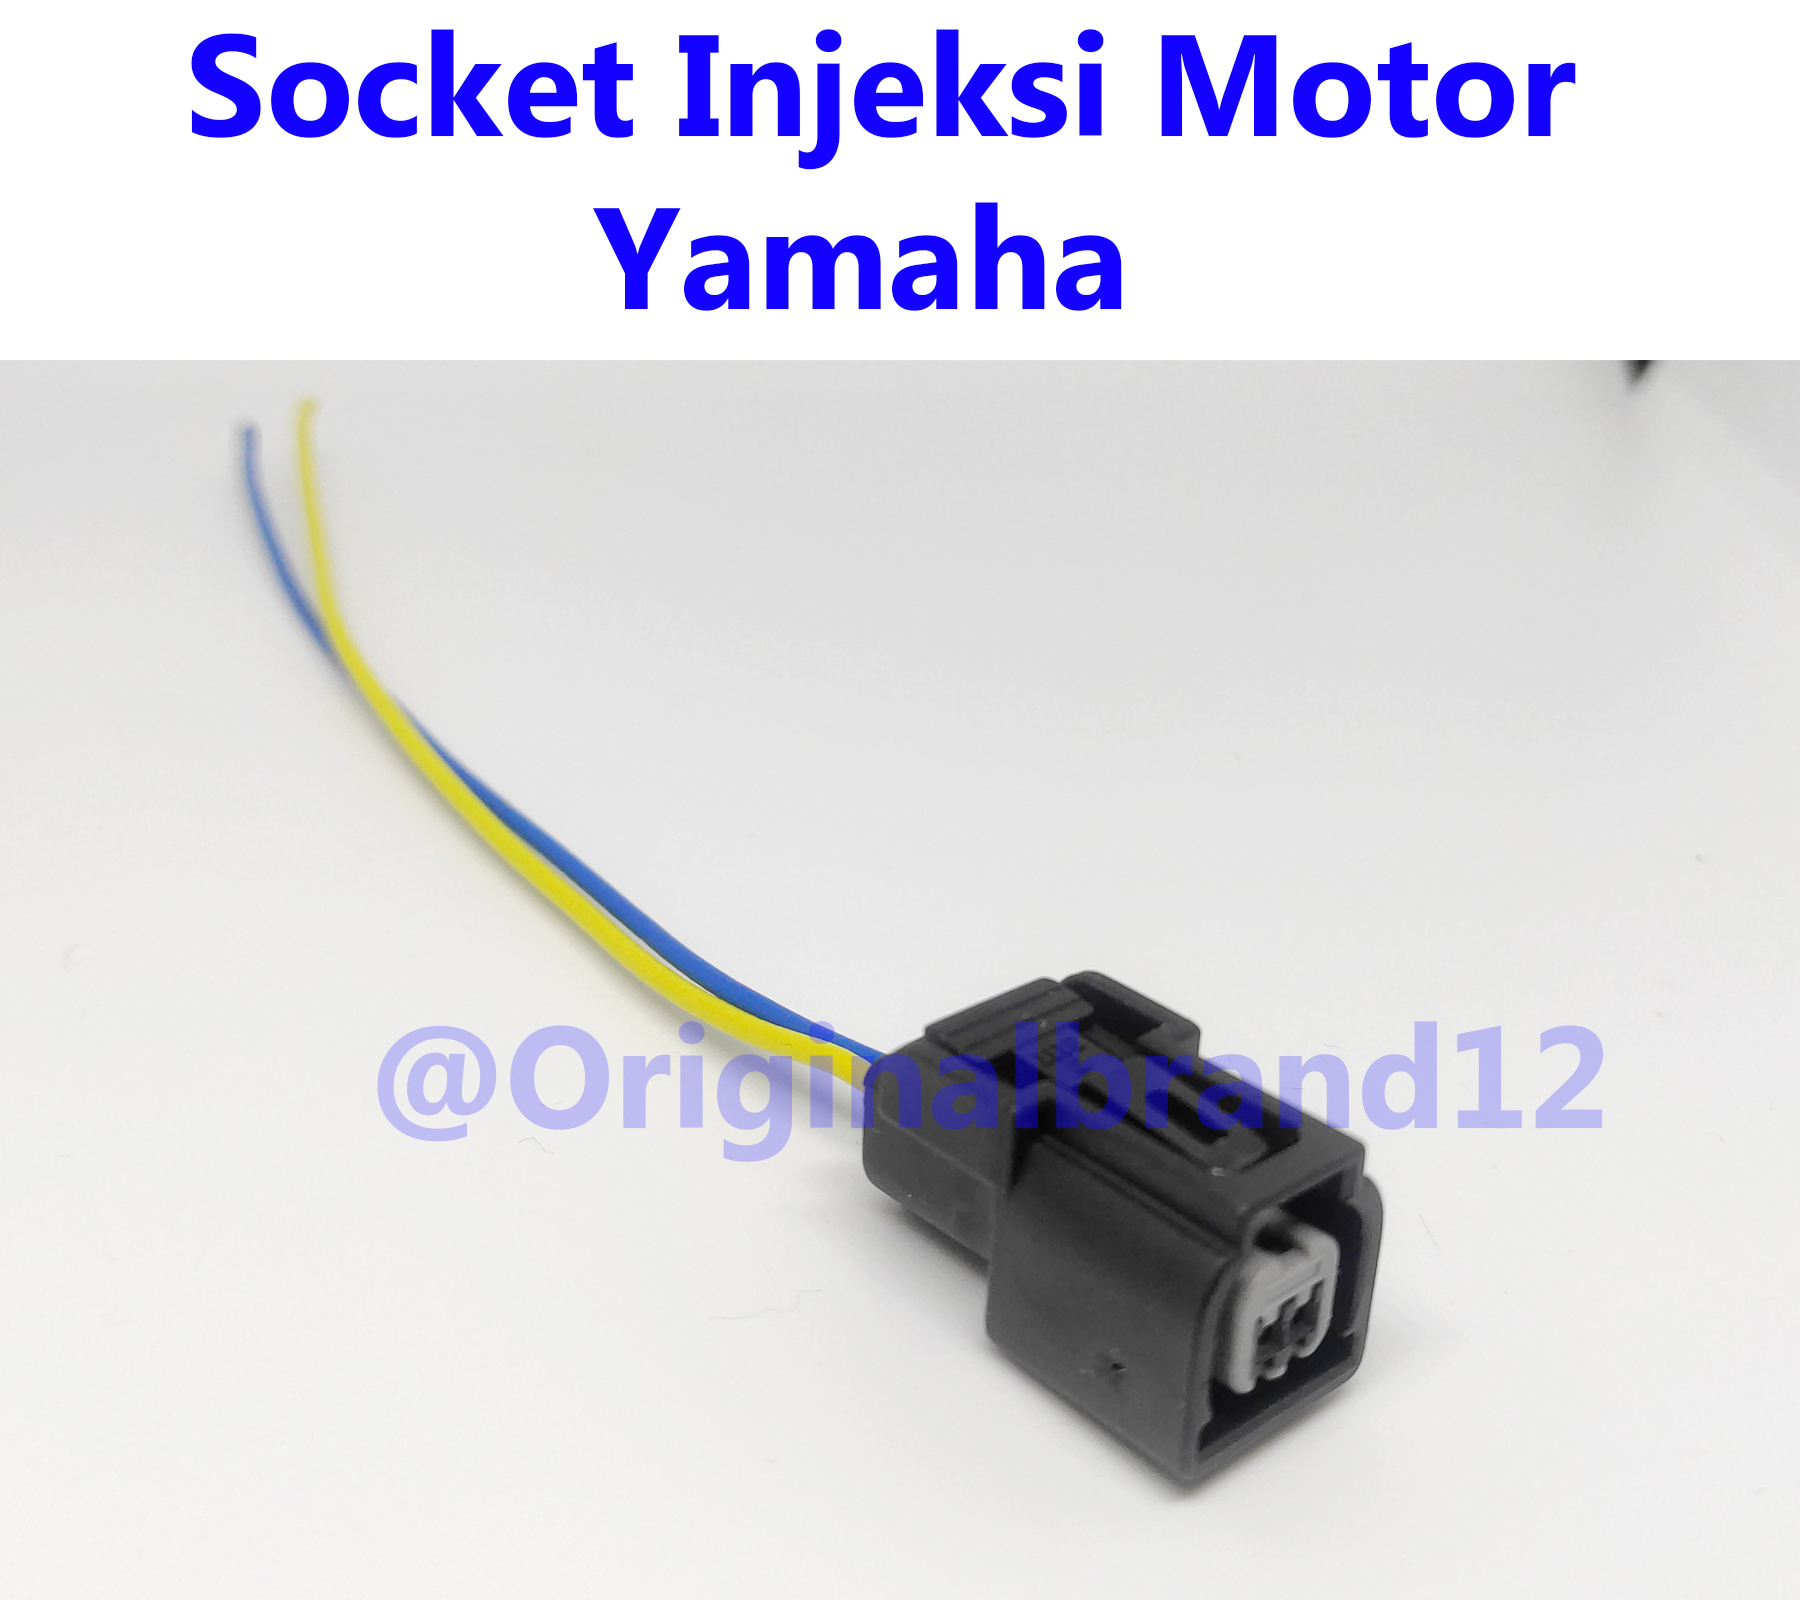 Soket Socket Injeksi Injektor Yamaha Oem Import | Lazada Indonesia